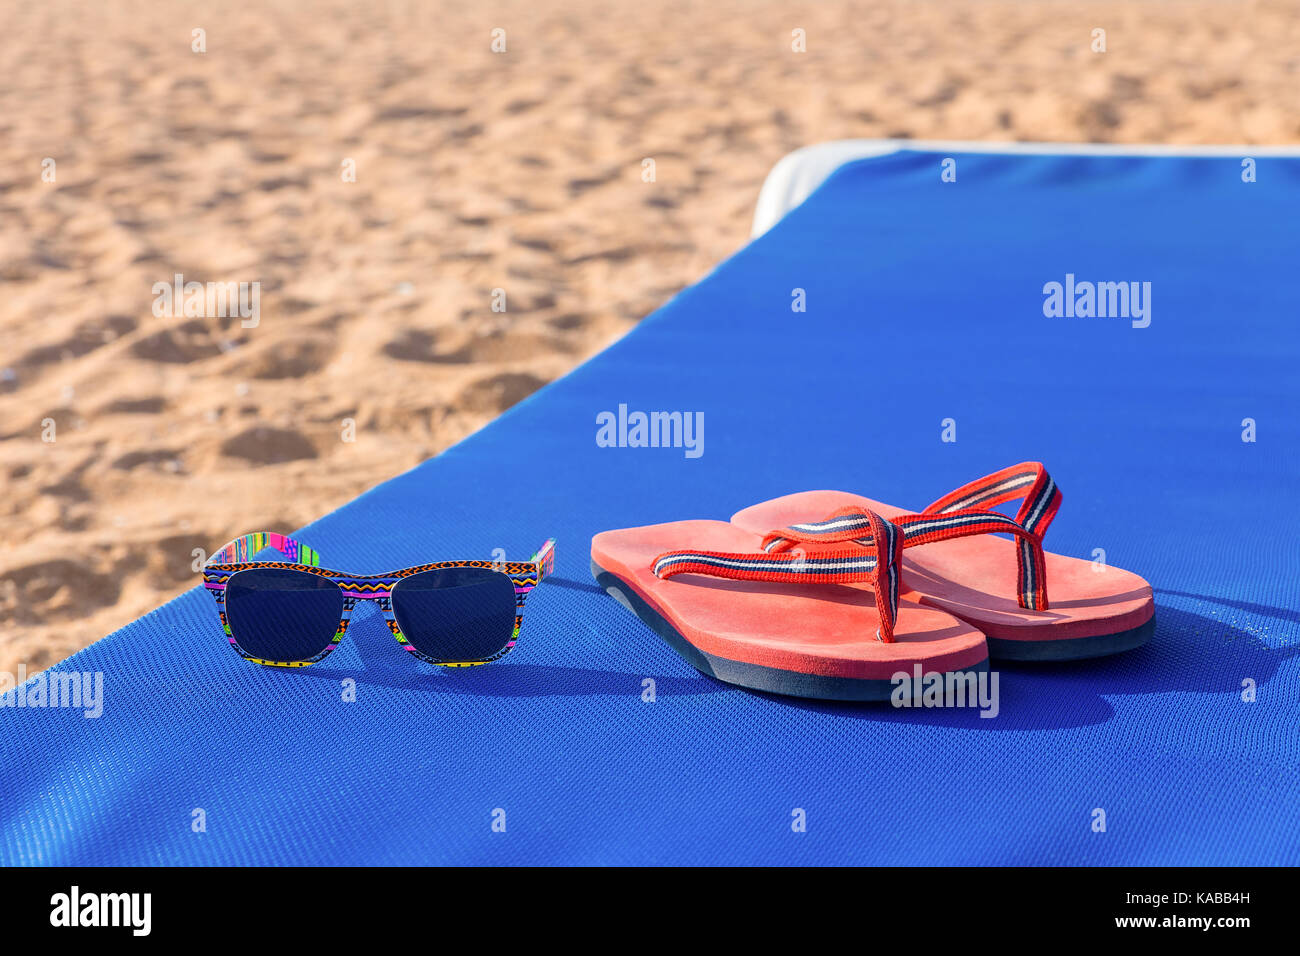 Des chaussons de bain et lunettes de soleil bleu at beach Banque D'Images